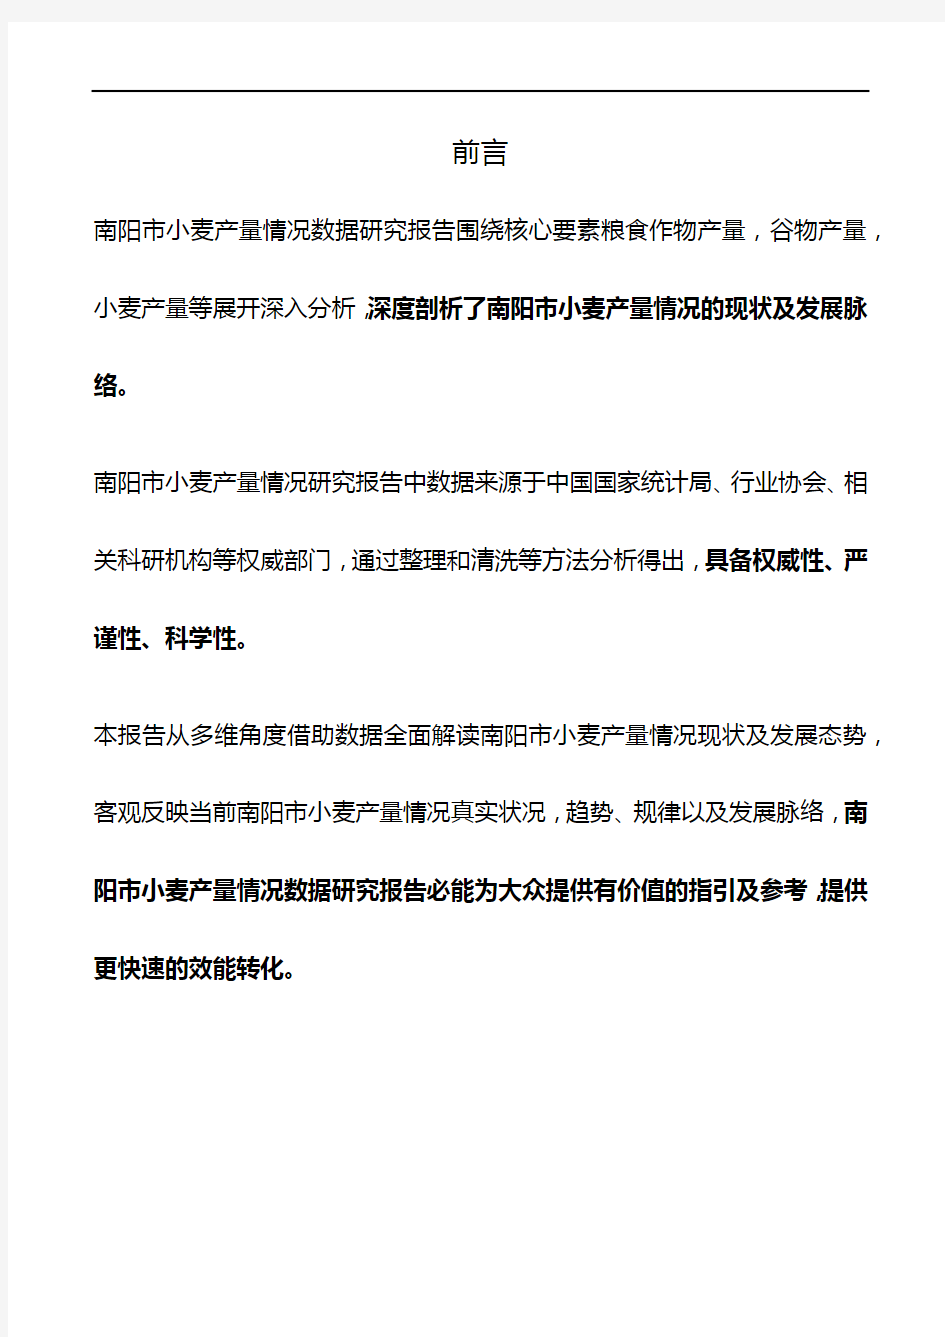 河南省南阳市小麦产量情况数据研究报告2019版